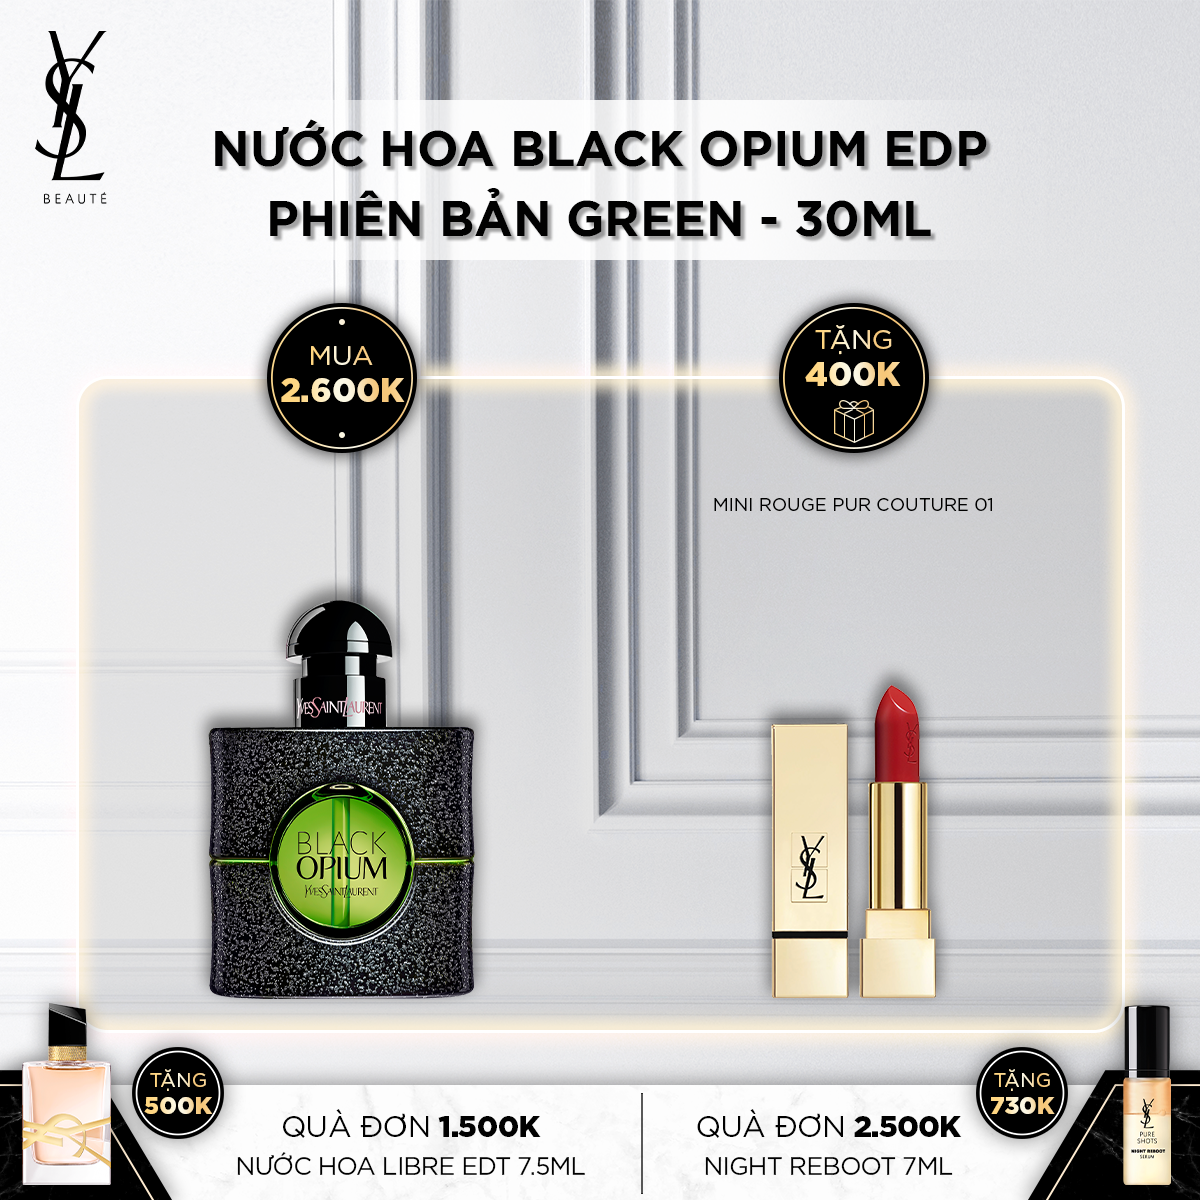 Nước Hoa Gợi Cảm Black Opium EDP phiên bản GREEN 30ml